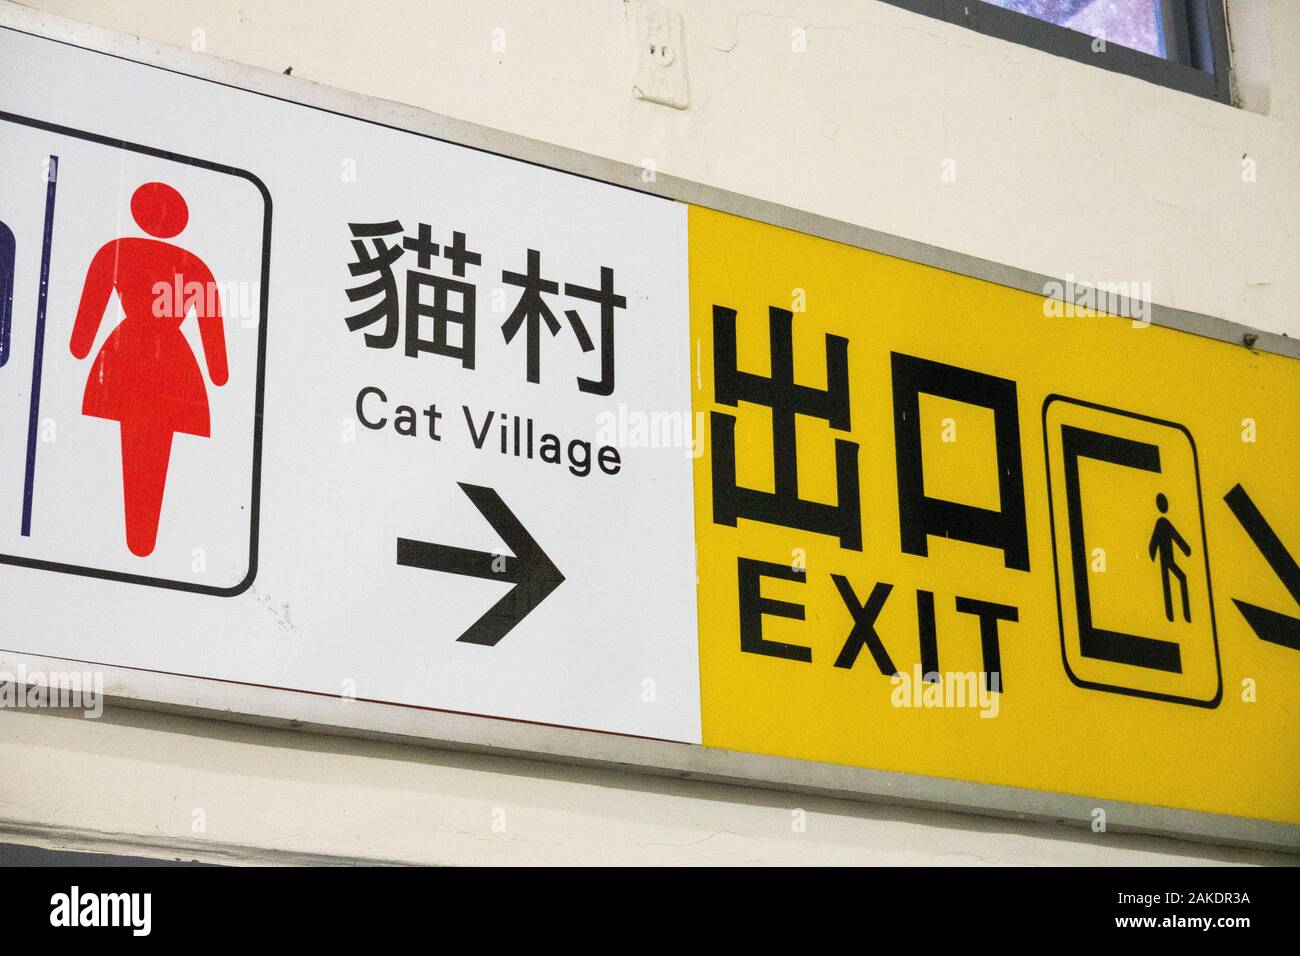 Ein zweisprachiges Schild in Mandarin und Englisch am Houtong Bahnhof, das die Richtung zum Cat Village und Exit bezeichnet Stockfoto